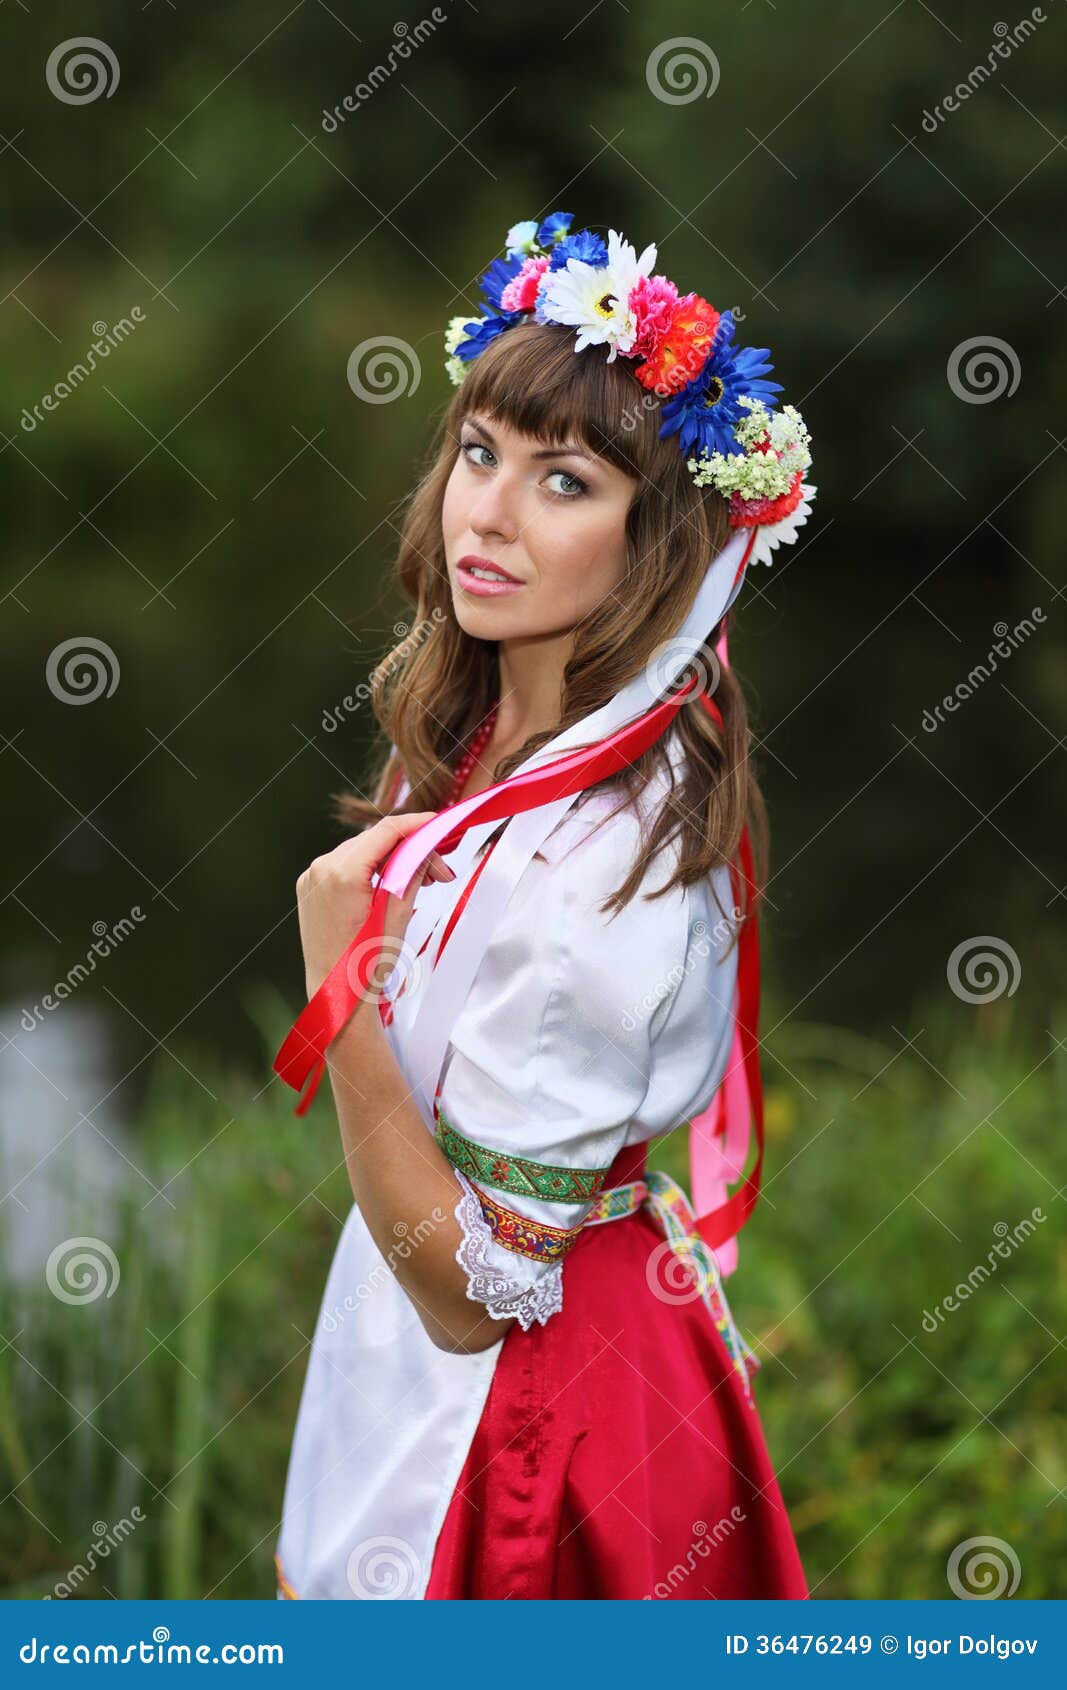 Ukrainian girl stock image. Image of outdoor, costume - 36476249